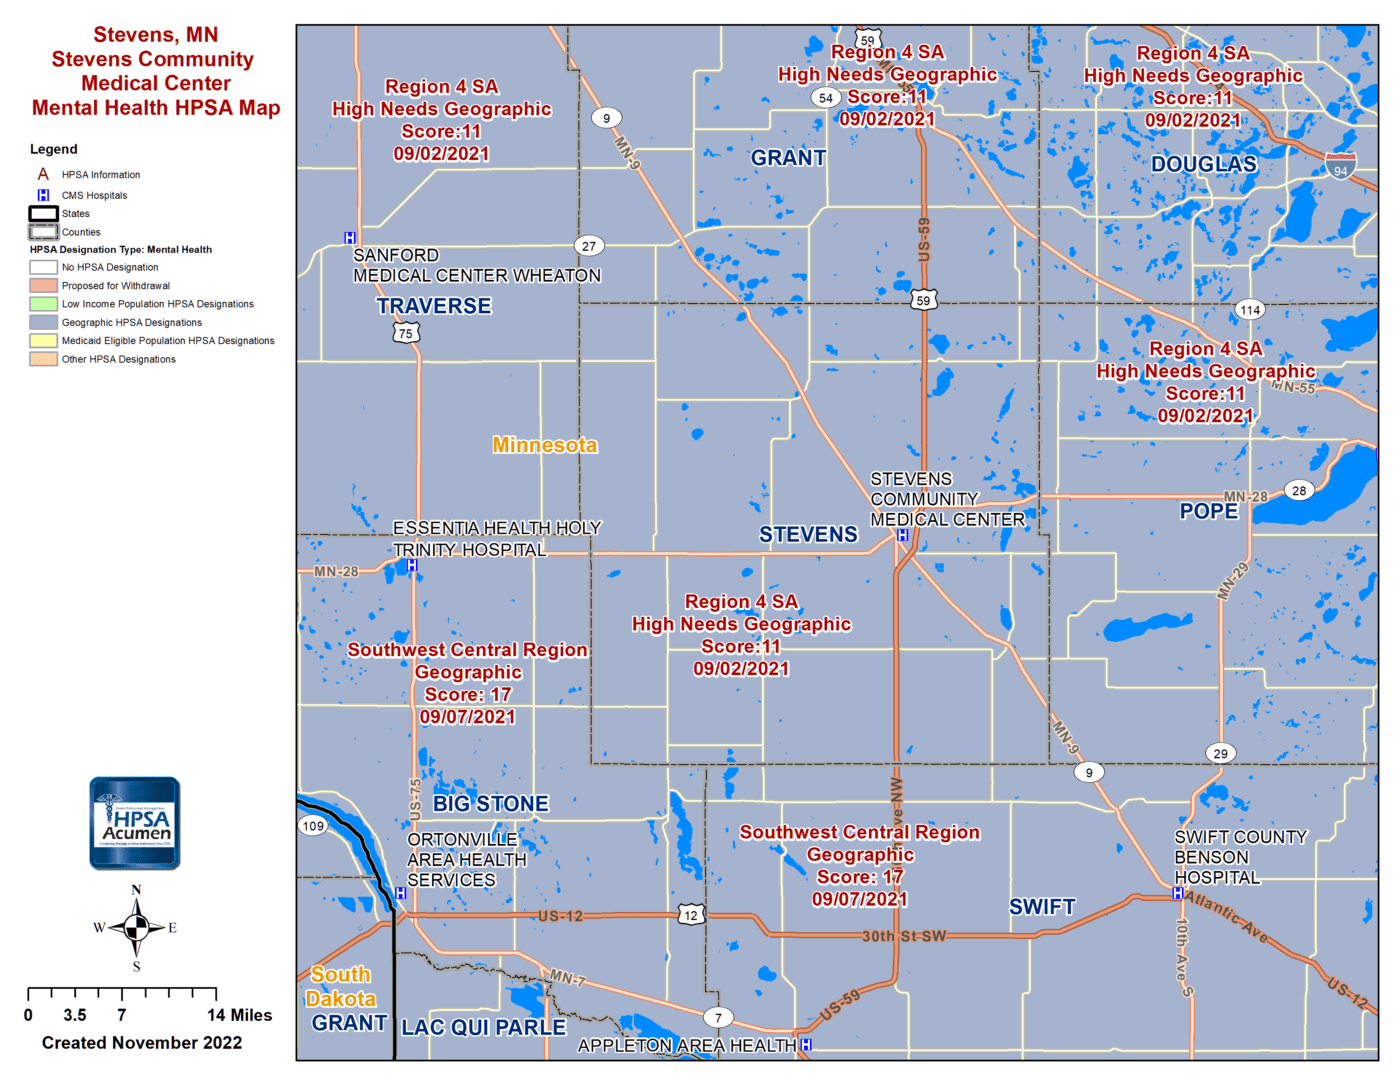 Stevens, MN MH HPSA Map